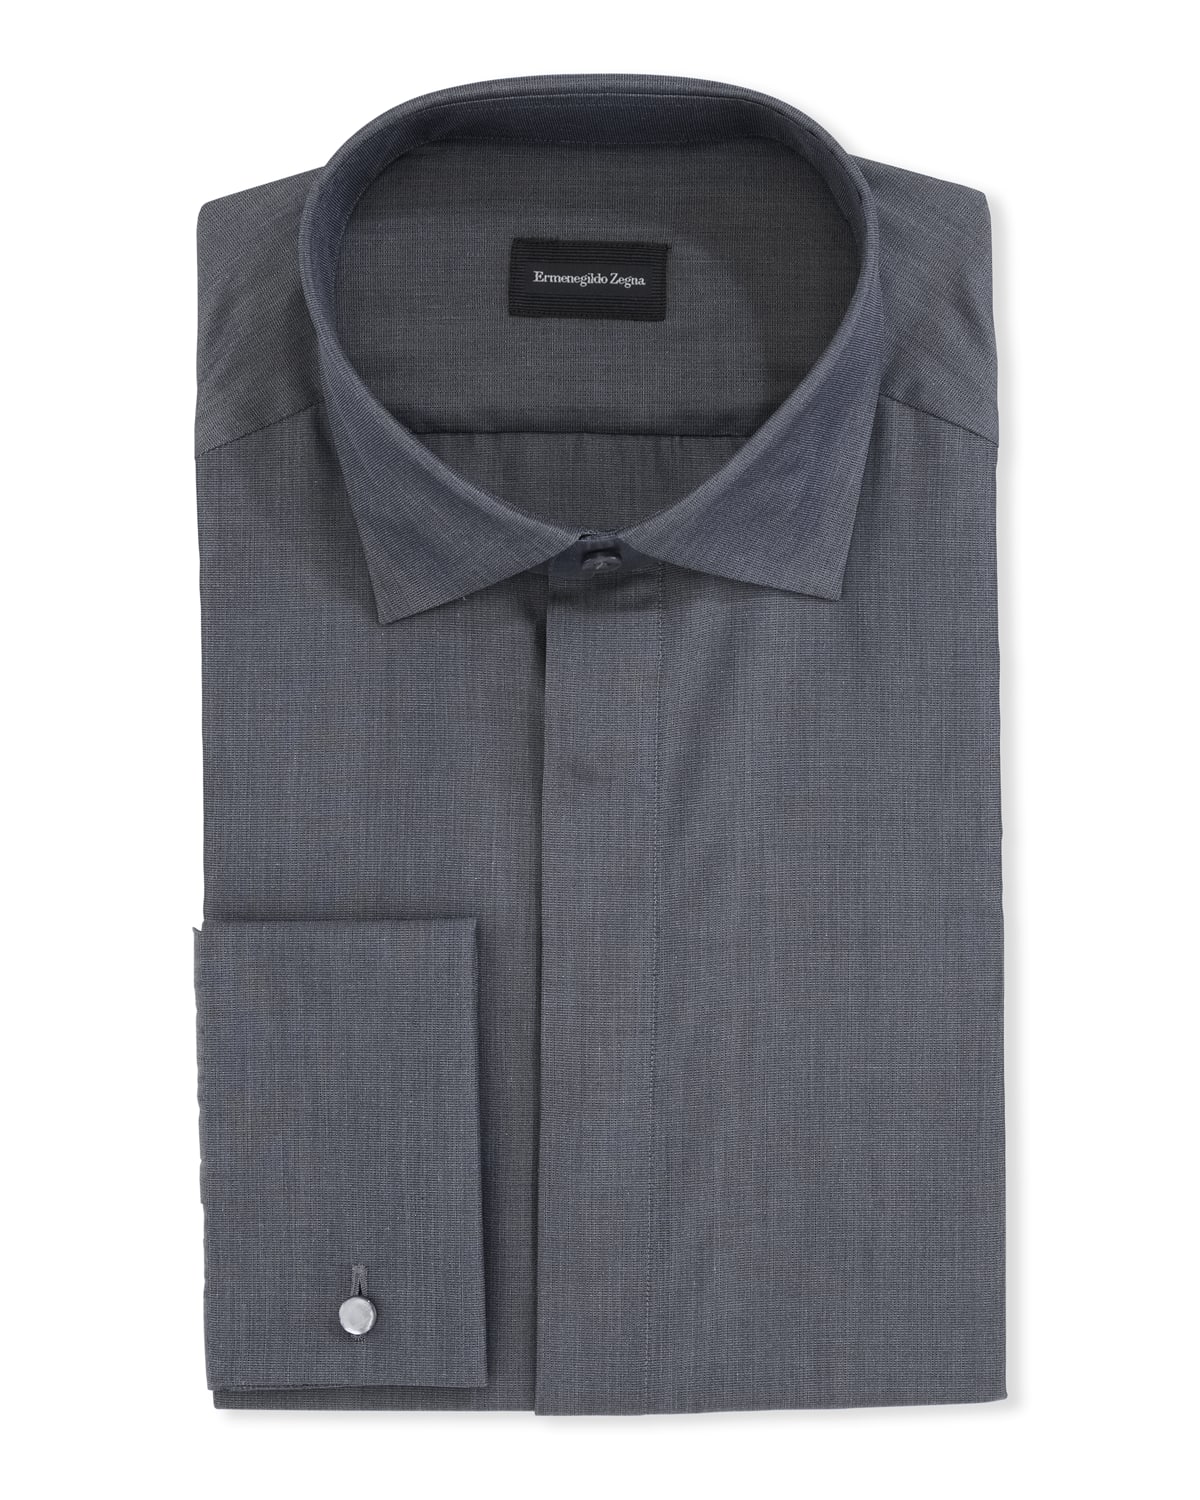 Ermenegildo Zegna Men's Cotton/Silk Diamond Formal Shirt | Neiman Marcus